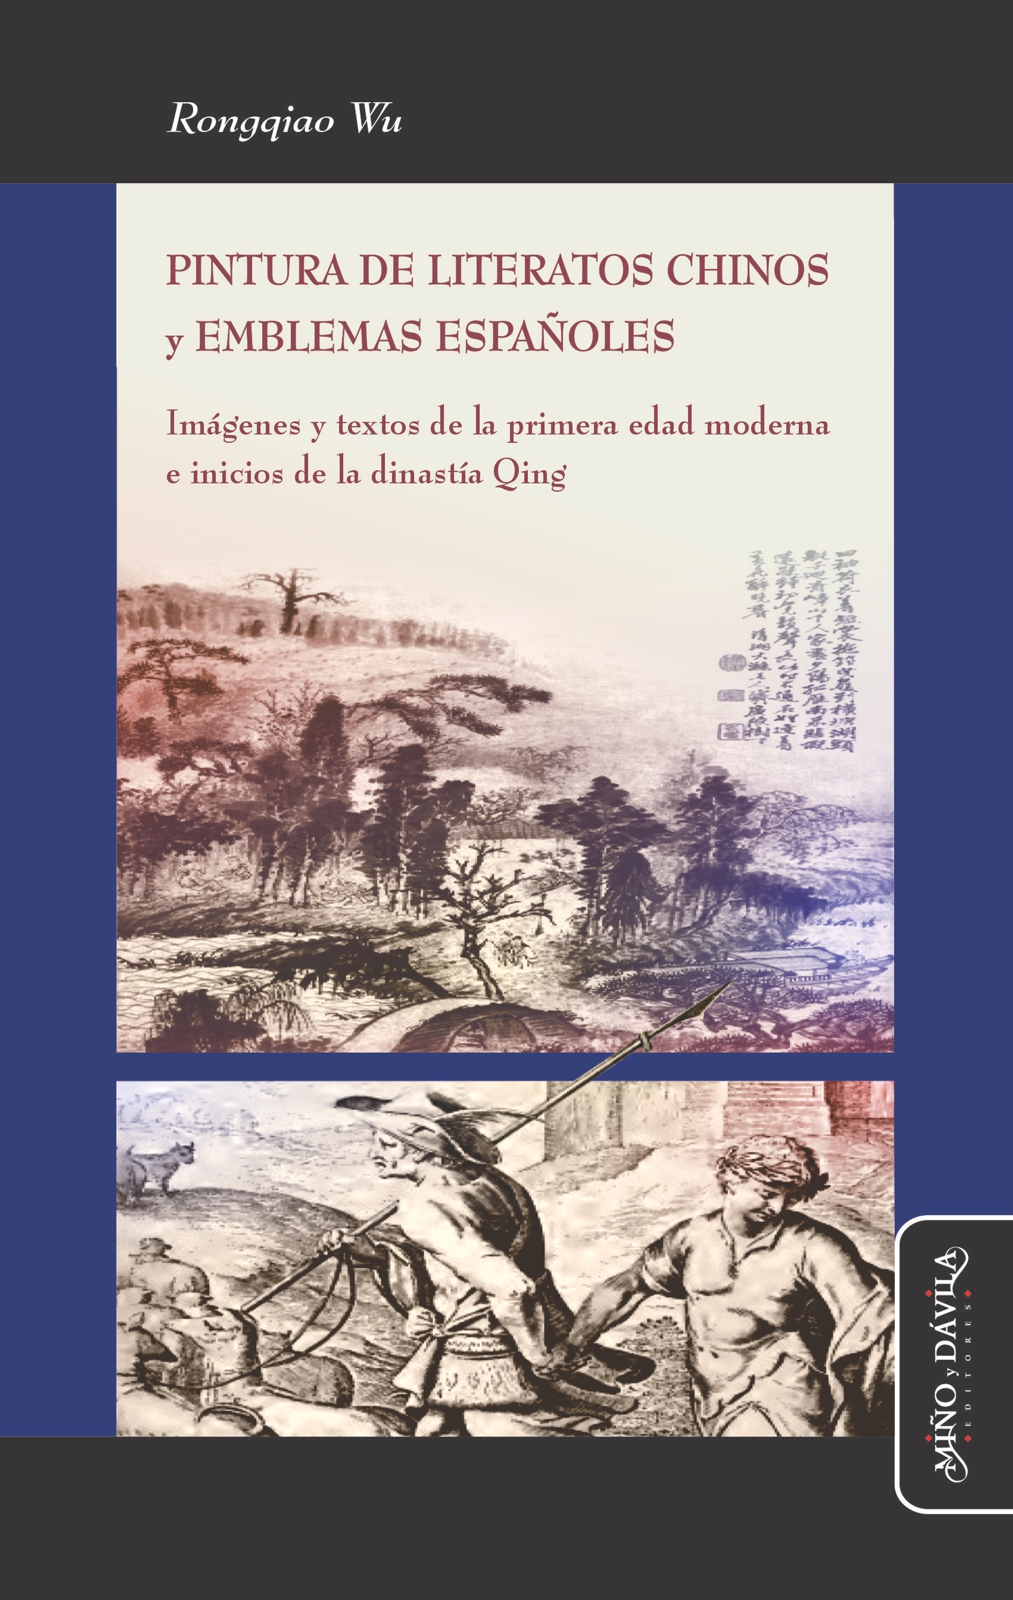 Pintura de literatos chinos y emblemas españoles